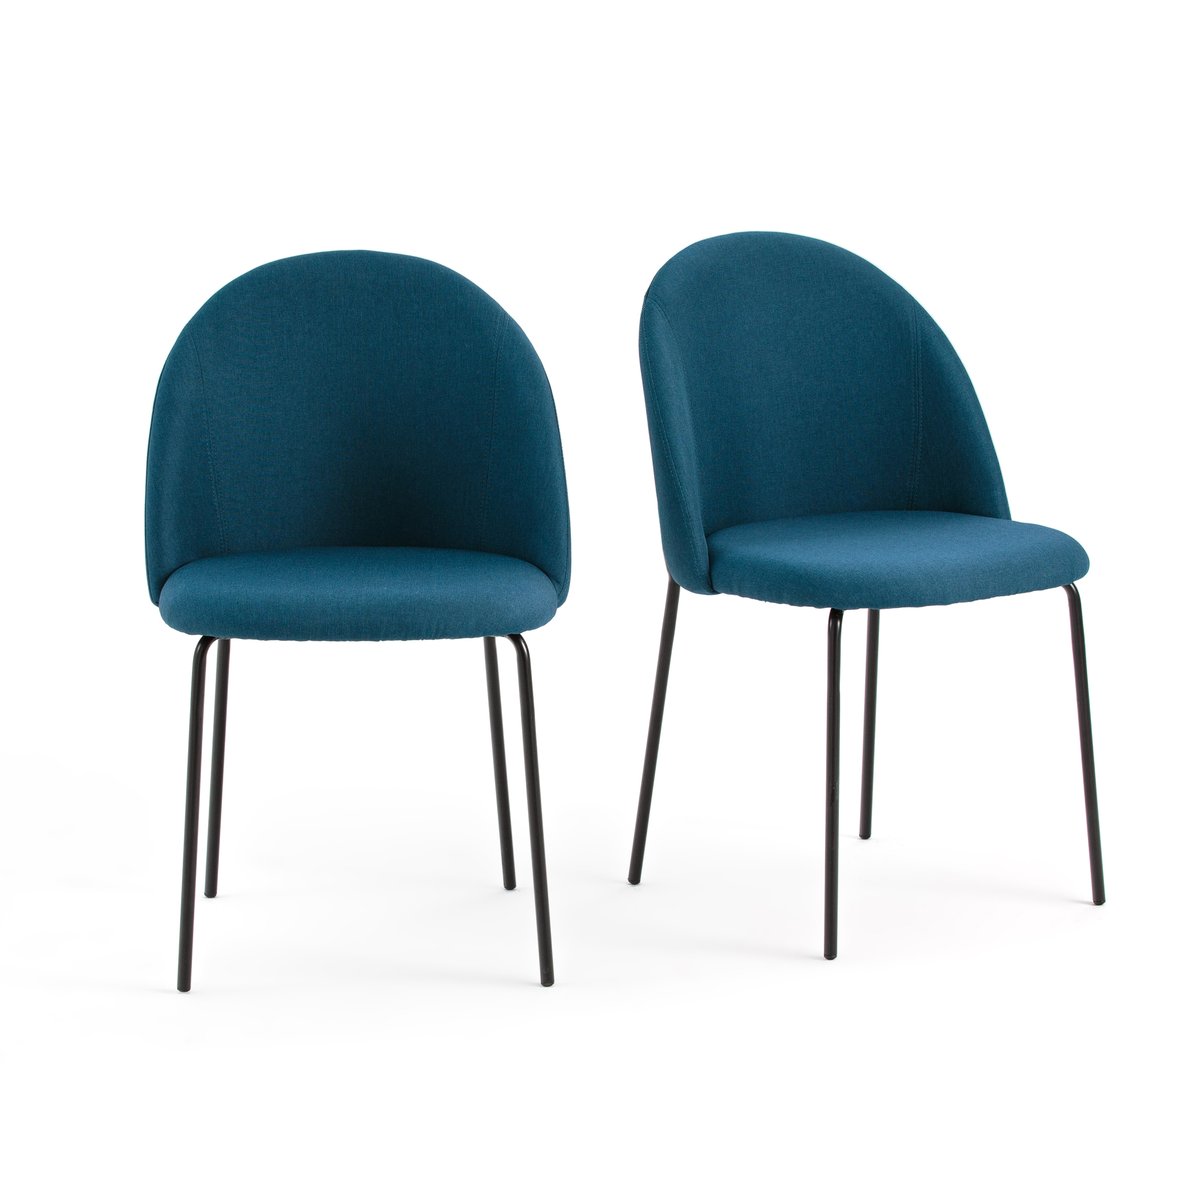 Комплект из 2 стульев NORDIE La Redoute единый размер синий комплект из круглых зеркал la redoute из латуни uyova единый размер черный